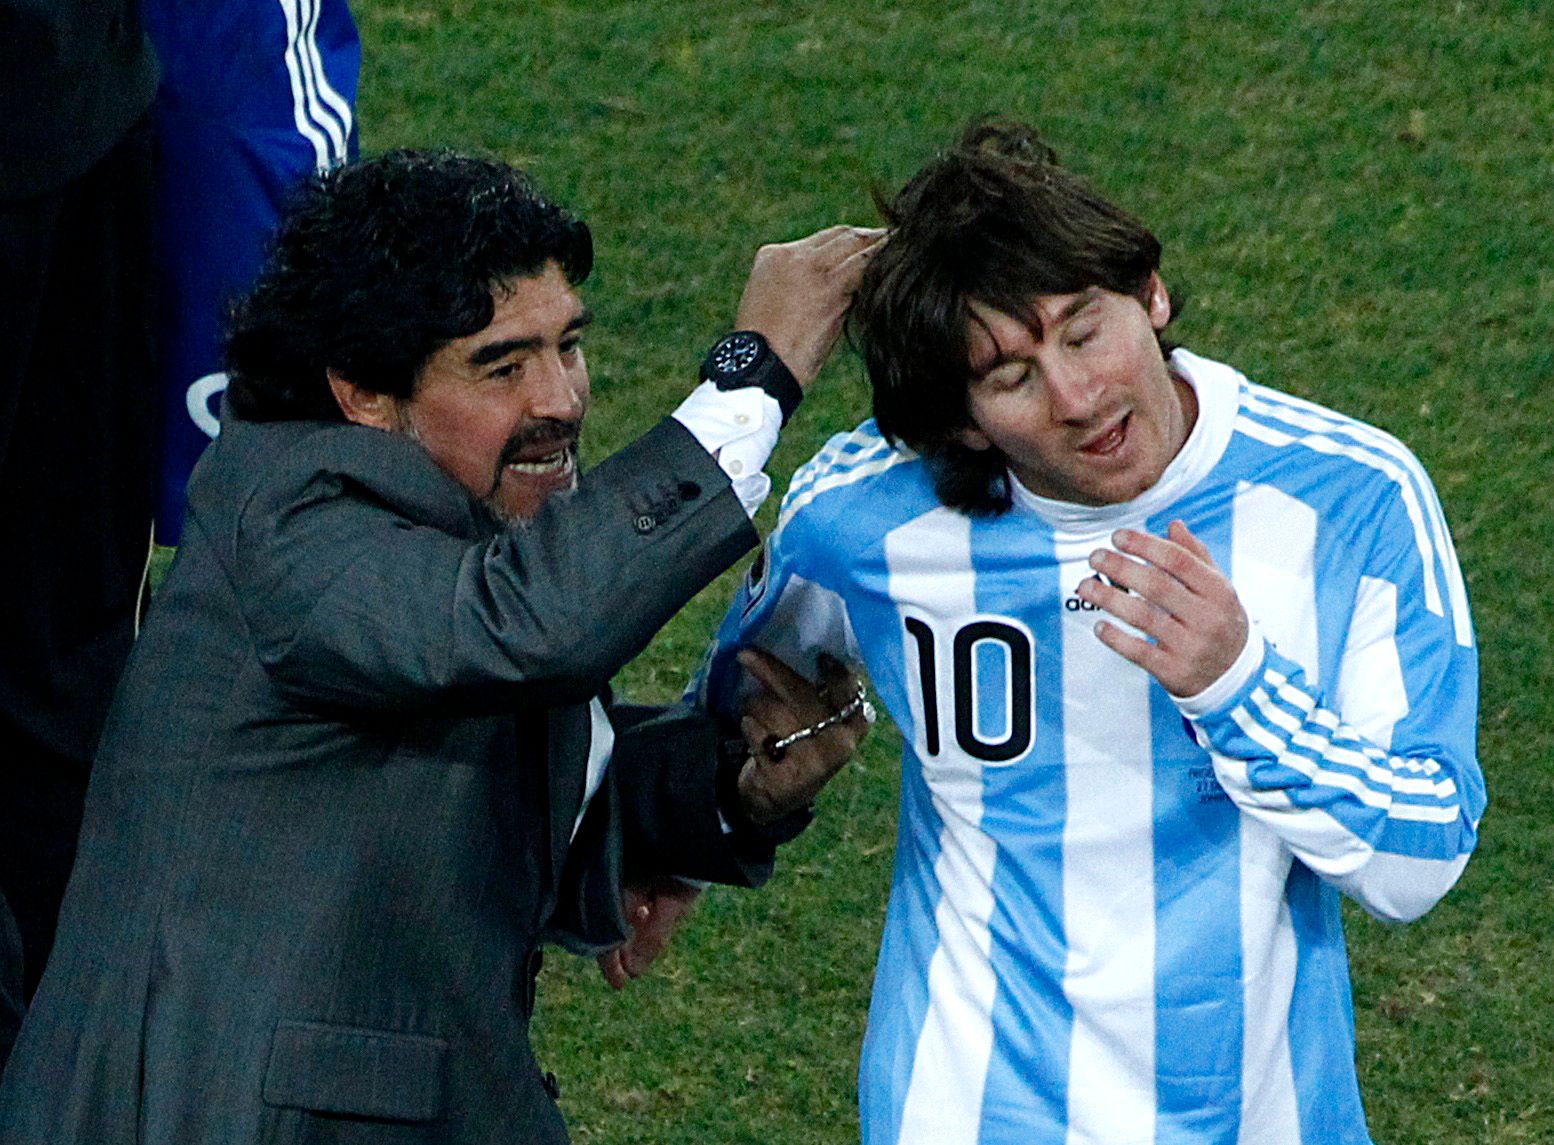 The two greatest! #maradona #messi #foryoupage #goats #argentina